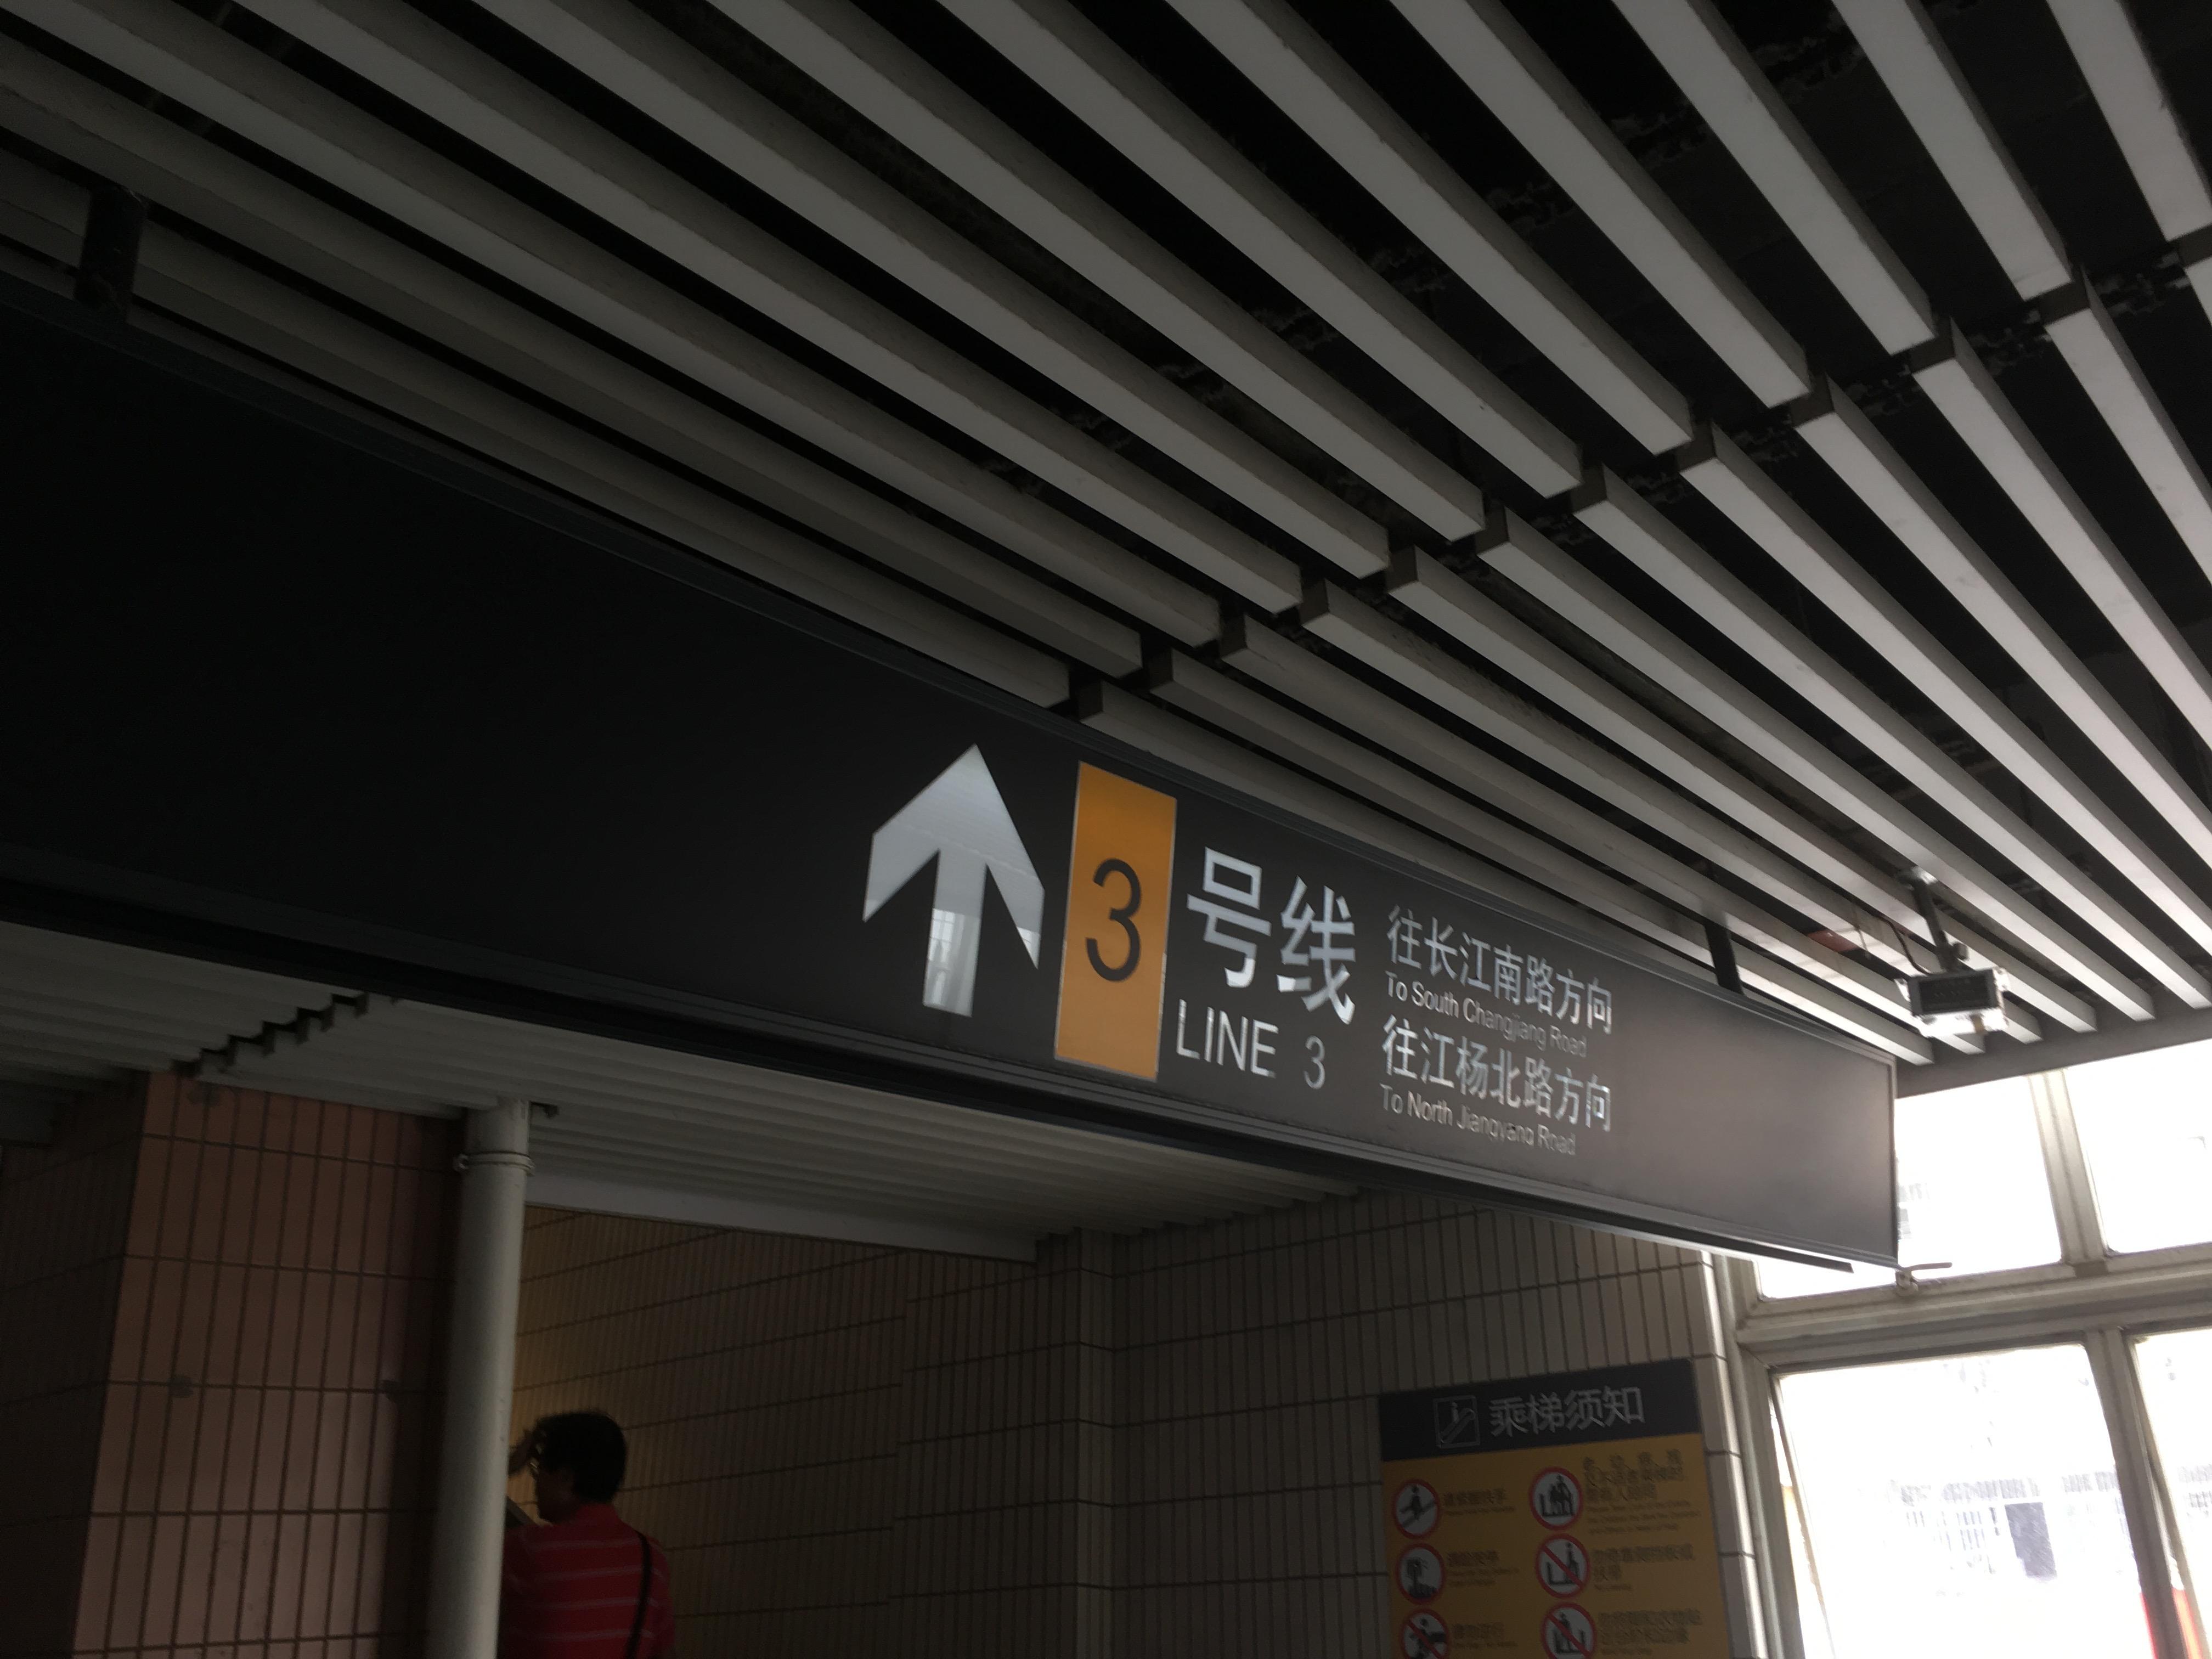 上海地铁站标识图片